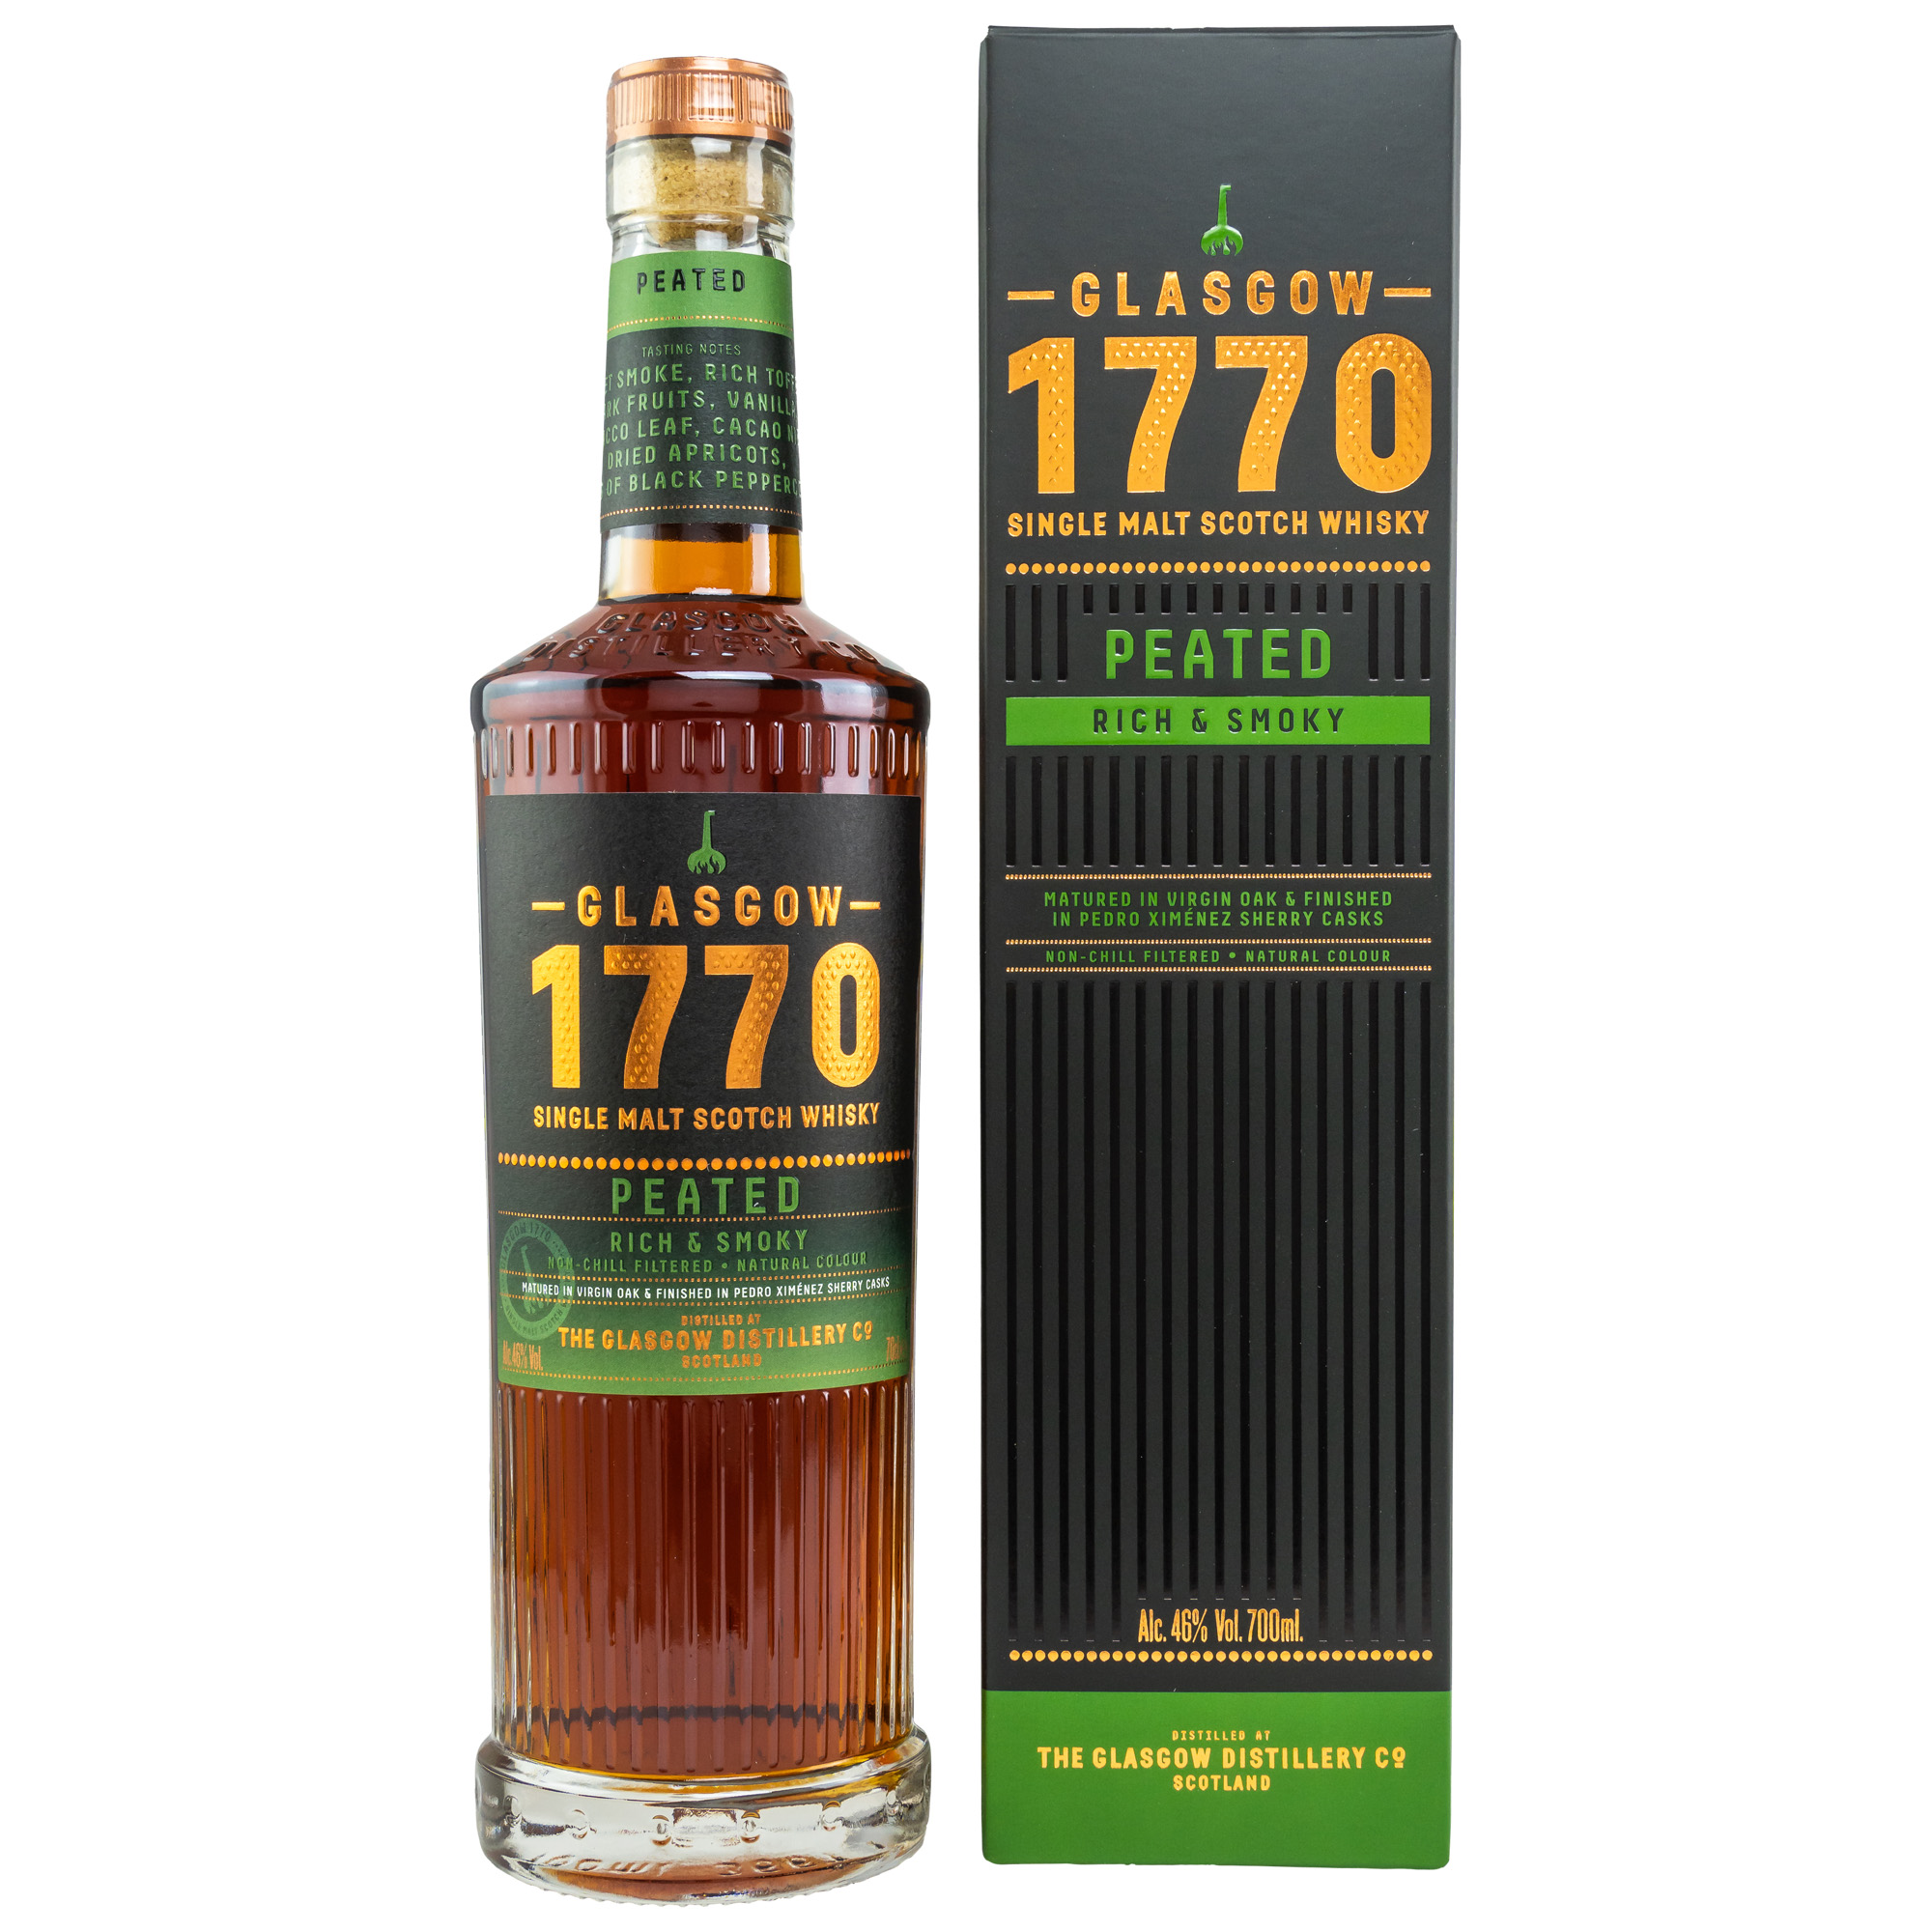 1770 Glasgow Single Malt Scotch Whisky - Peated - Rich & Smoky